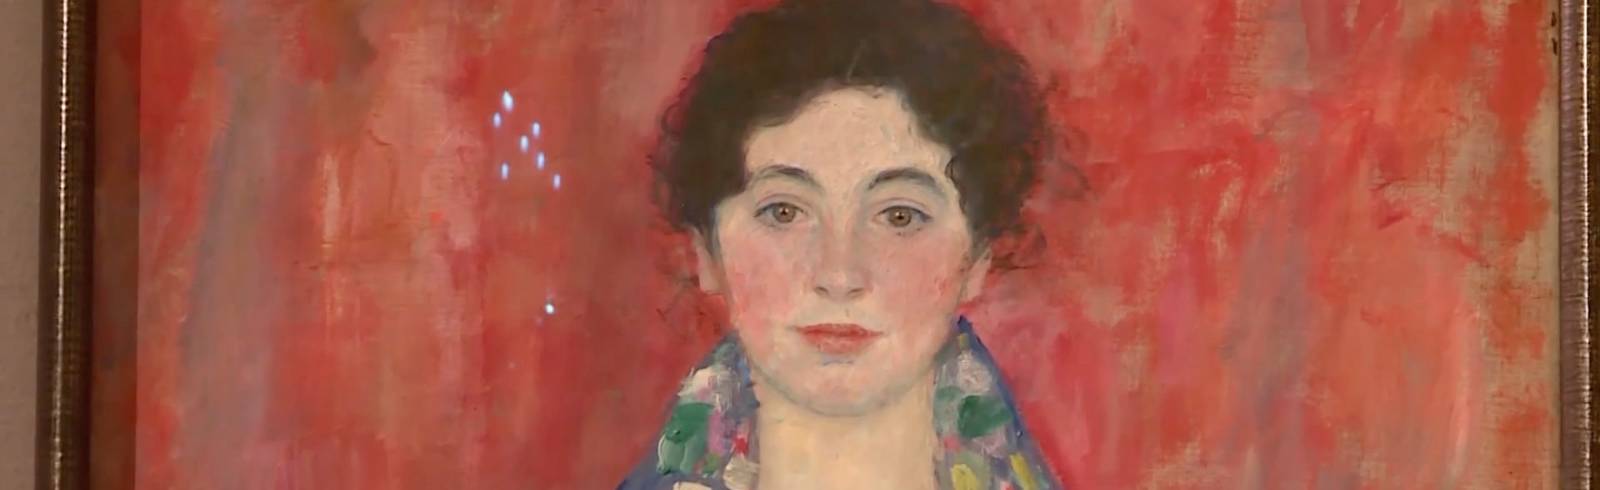 Auktion: Klimt-Bild für 35 Mio. Euro versteigert